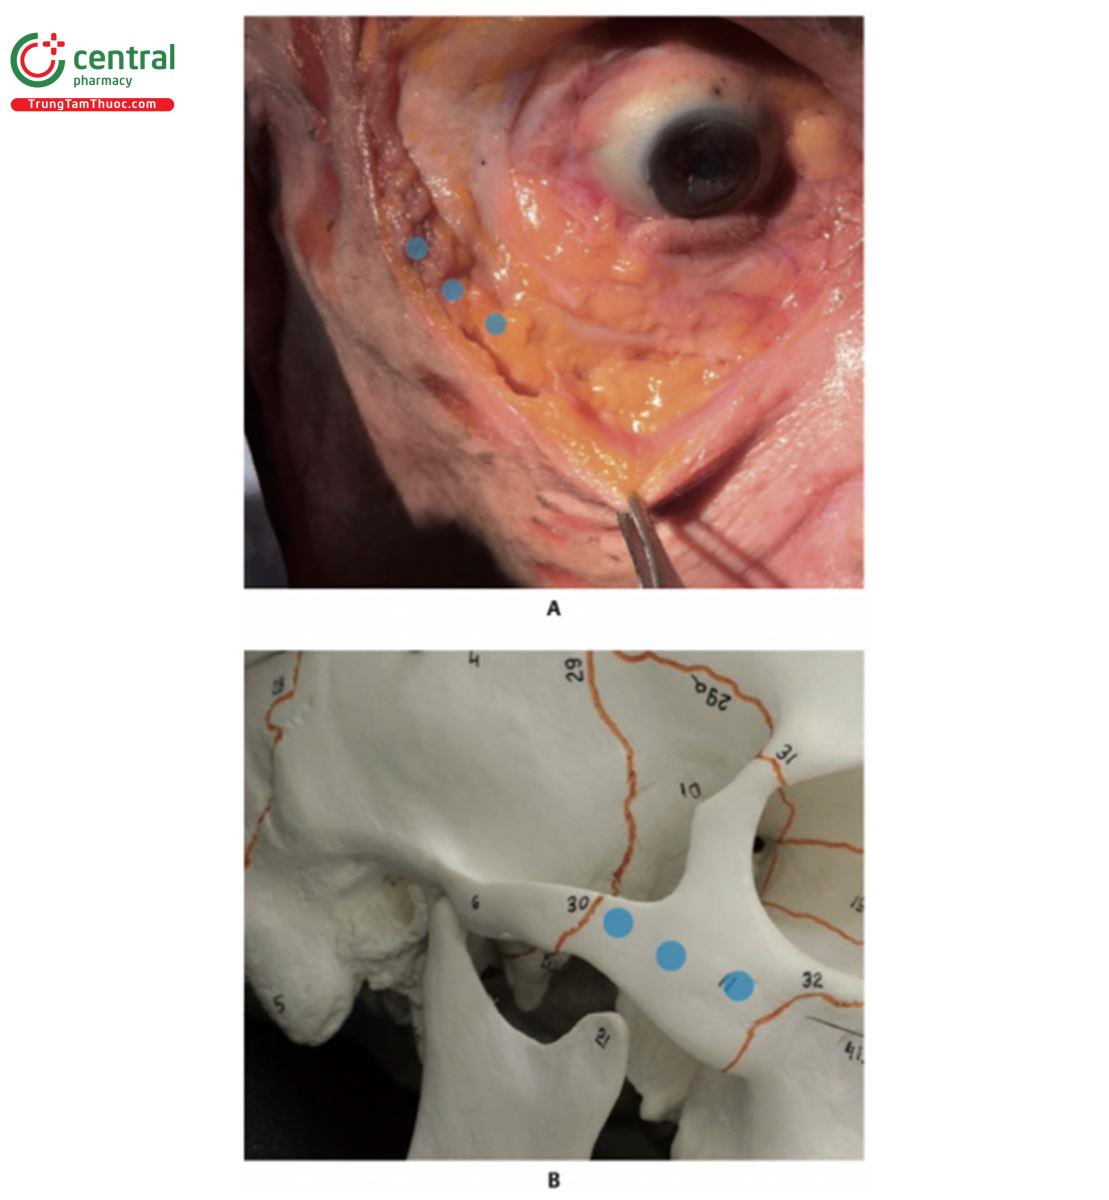 Hình 10.34 A. Bên phải khuôn mặt xác tươi bộc lộ da, lớp mỡ nông (SFP), cơ vòng mắt (OM), lớp mỡ dưới cơ vòng mắt (SOOF) và vòm gò má (MAr). Ba vòng tròn màu xanh lam giữa SOOF và MAr cho biết nơi sản phẩm được tiêm vào mặt phẳng dưới cơ, ở vùng gò má. B. Hình nghiêng giữa bên phải của hộp sọ với ba vòng tròn màu xanh đánh dấu nơi sản phẩm được tiêm vào xương gò má, trong mặt phẳng dưới cơ.